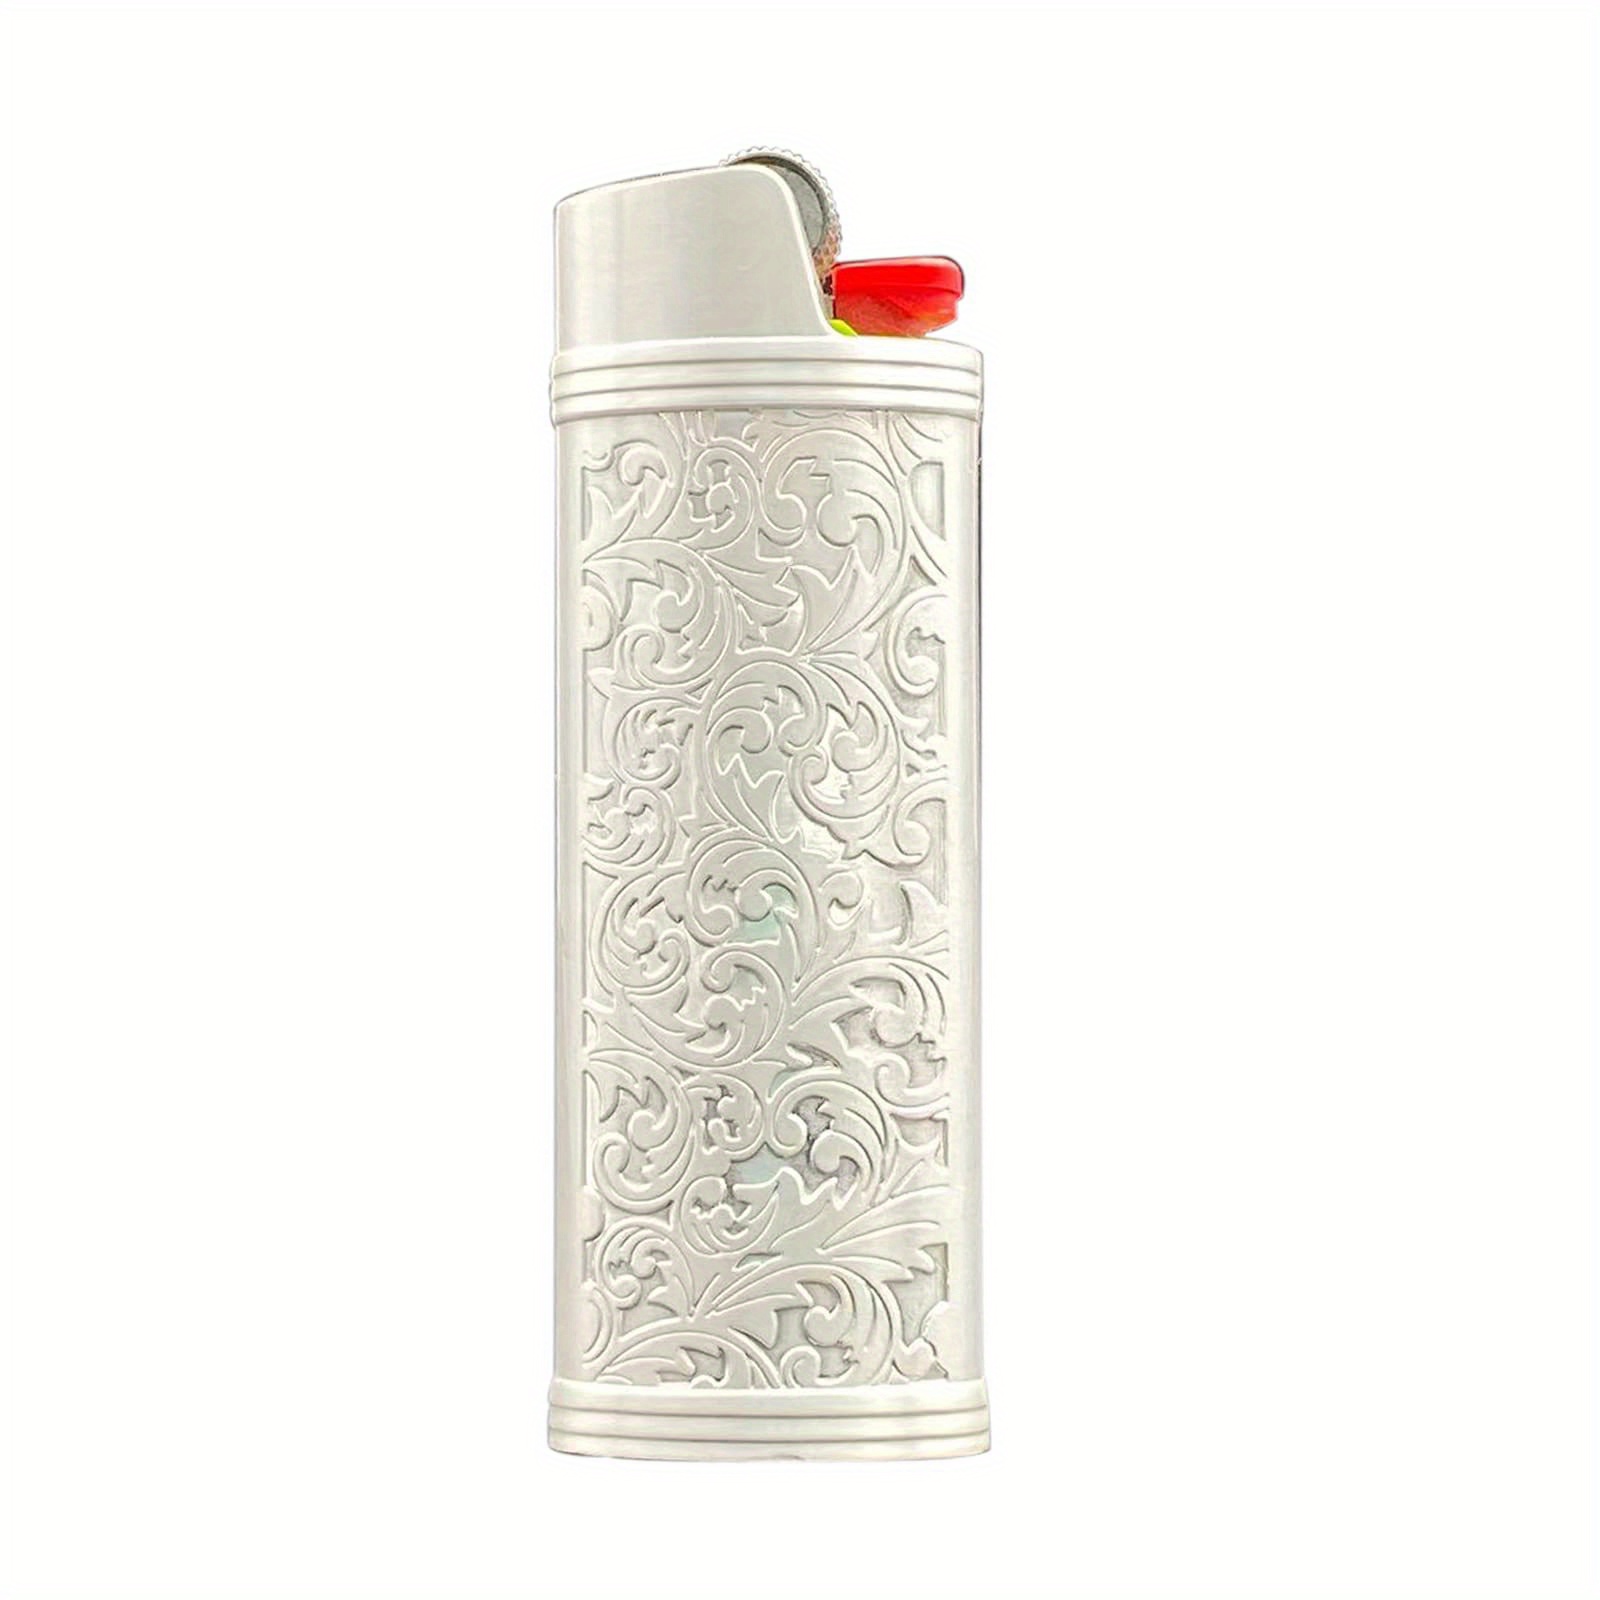 Lucklybestseller Metal Lighter Case Cover Holder Vintage Floral Stamped for  BIC Full Size Lighter J6 (White Gold)